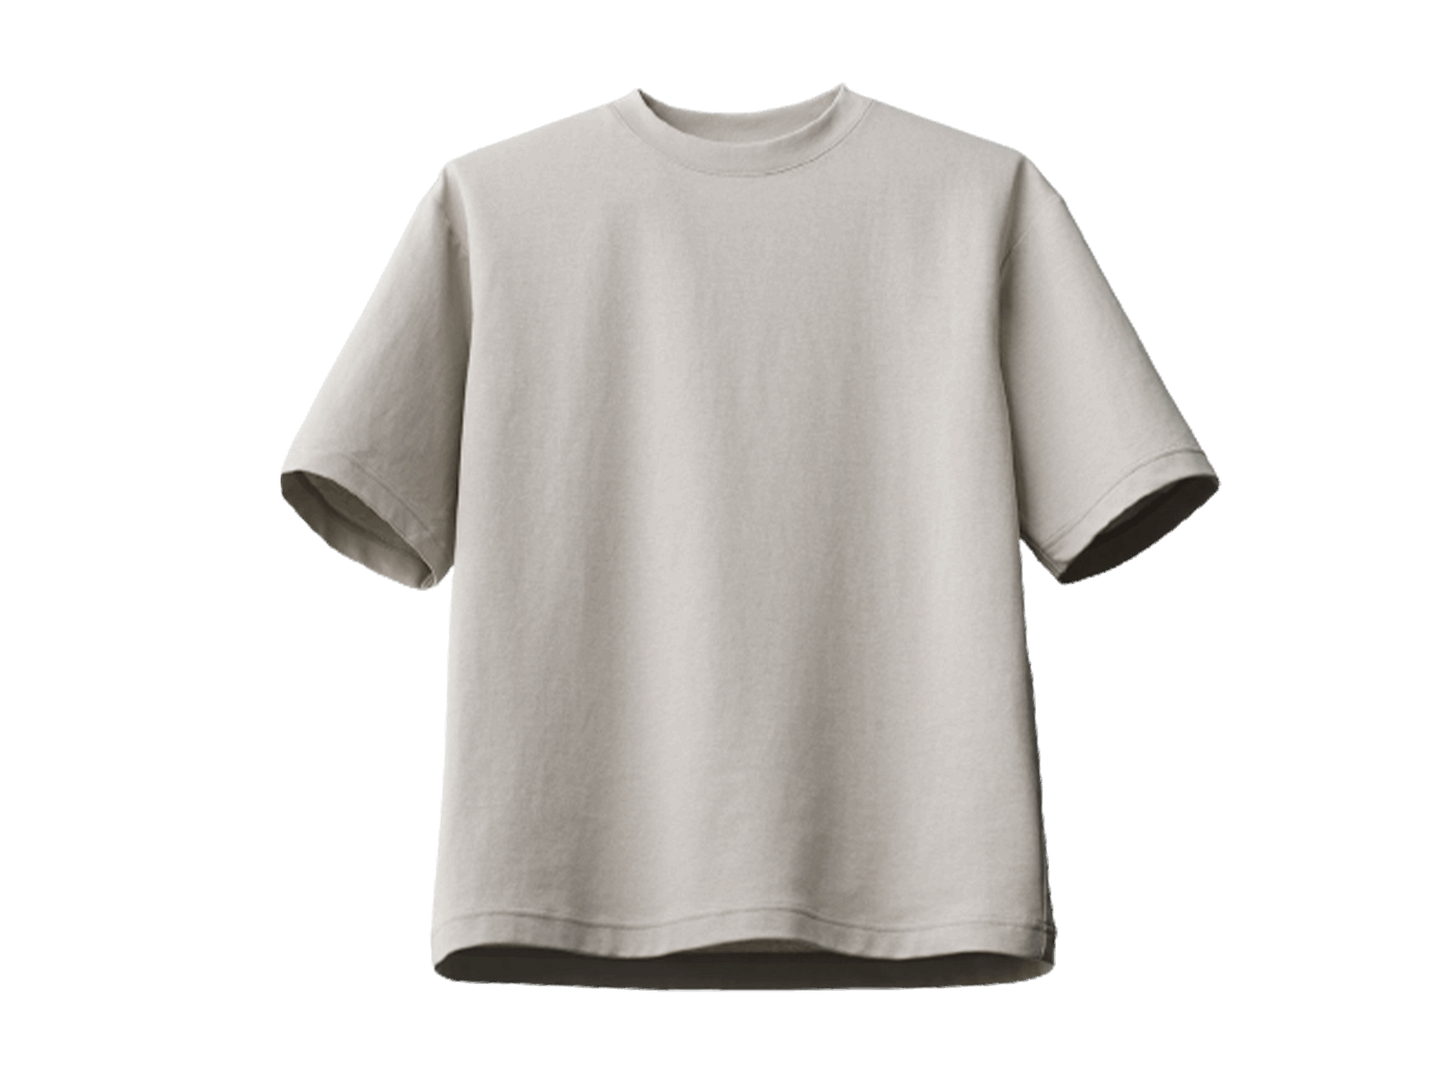 amhype plain oversize tshirt